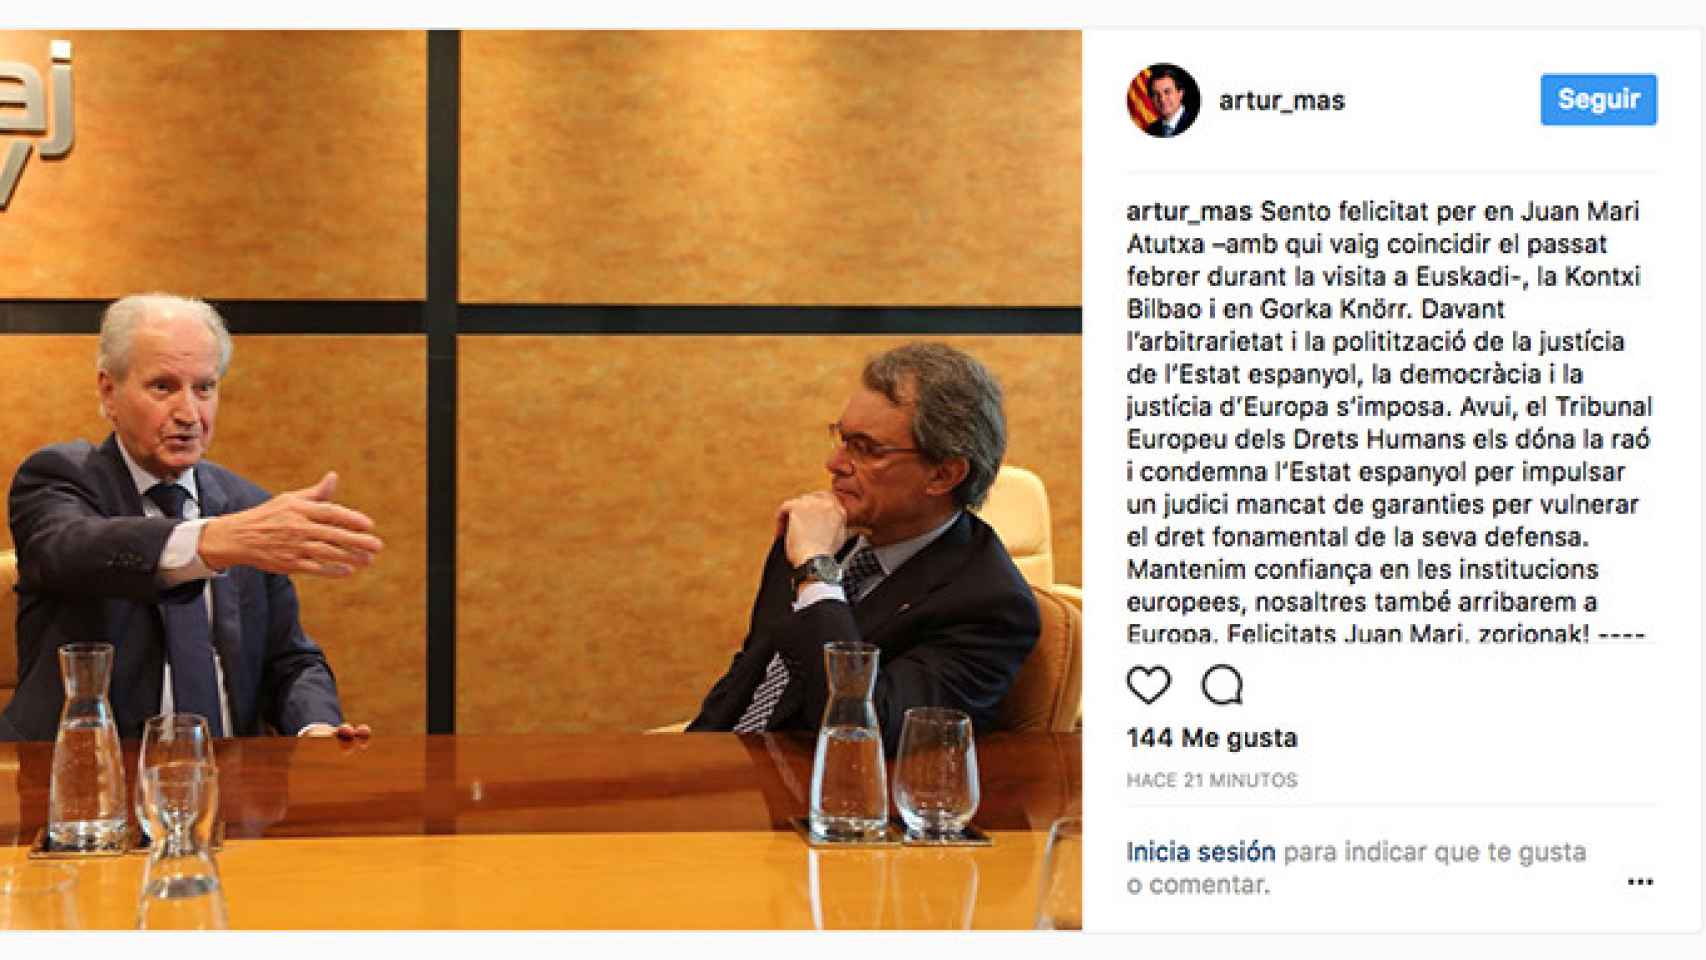 Artur Mas ha felicitado a Juan Mari Atutxa en Instagram tras conocer la sentencia del Tribunal de Estrasburgo / CG